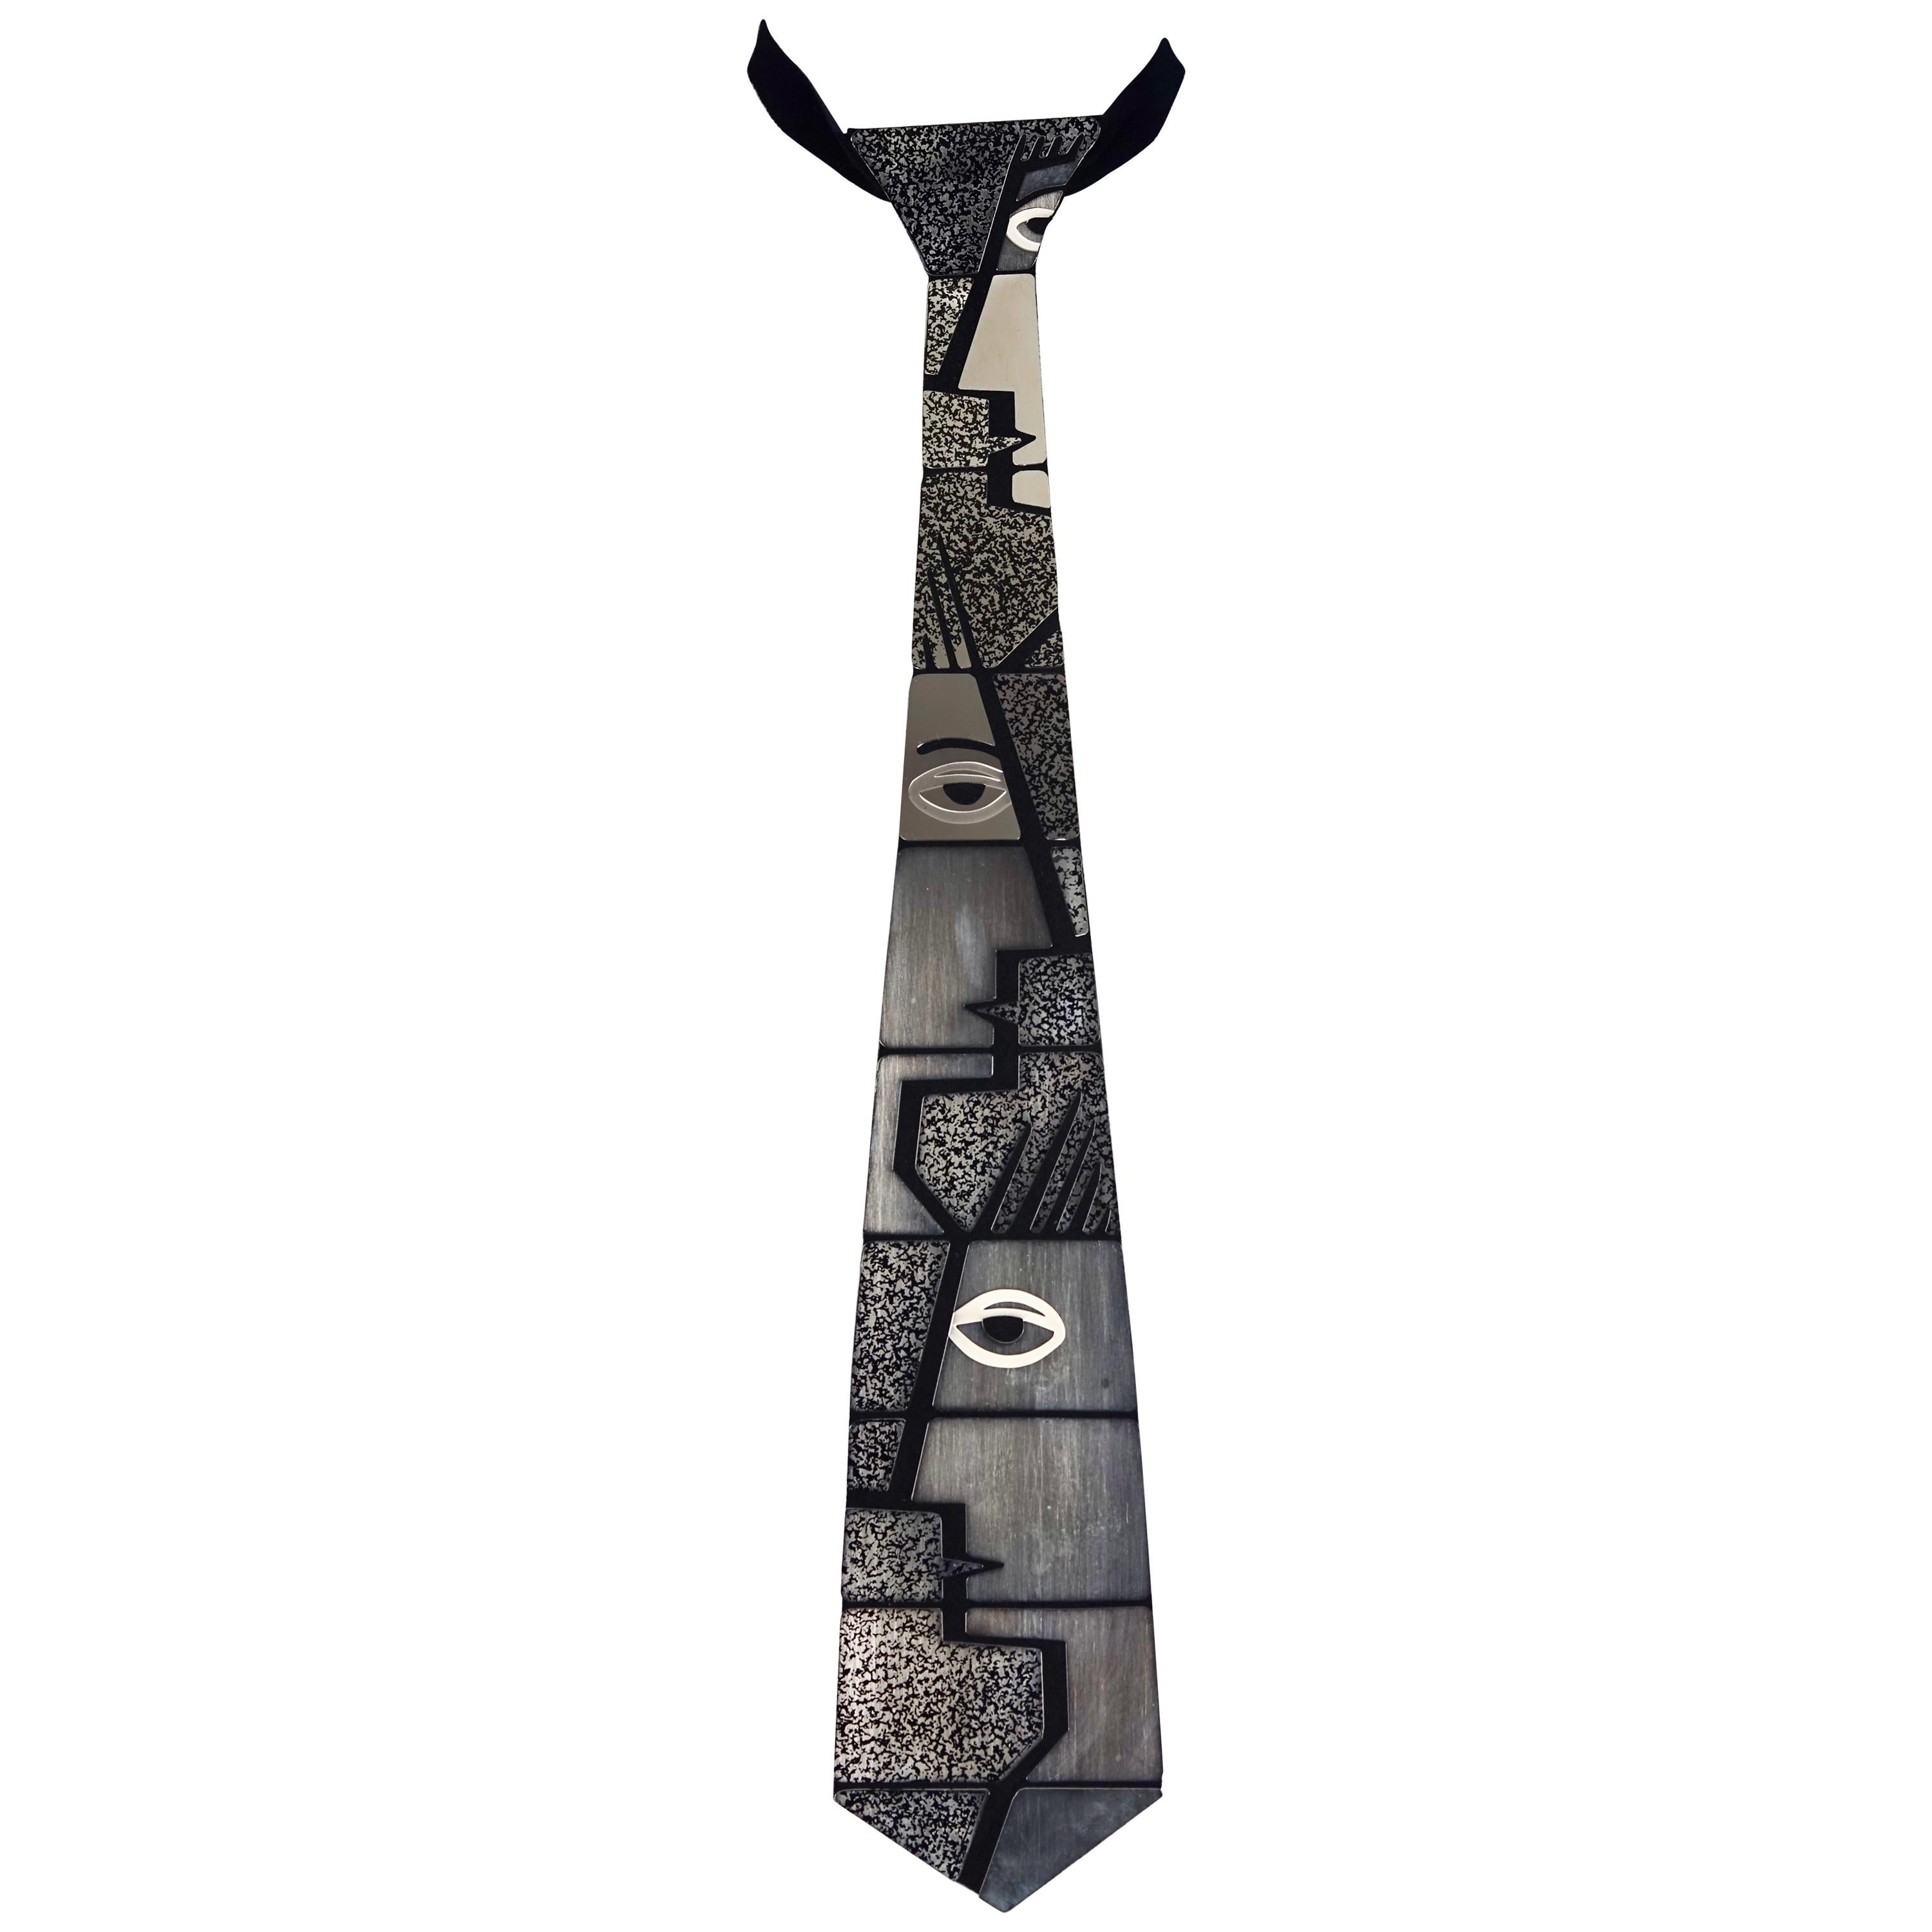 PIERRE CARDIN Cubism Metal Articulated Space Age Futuristic Necktie Necklace